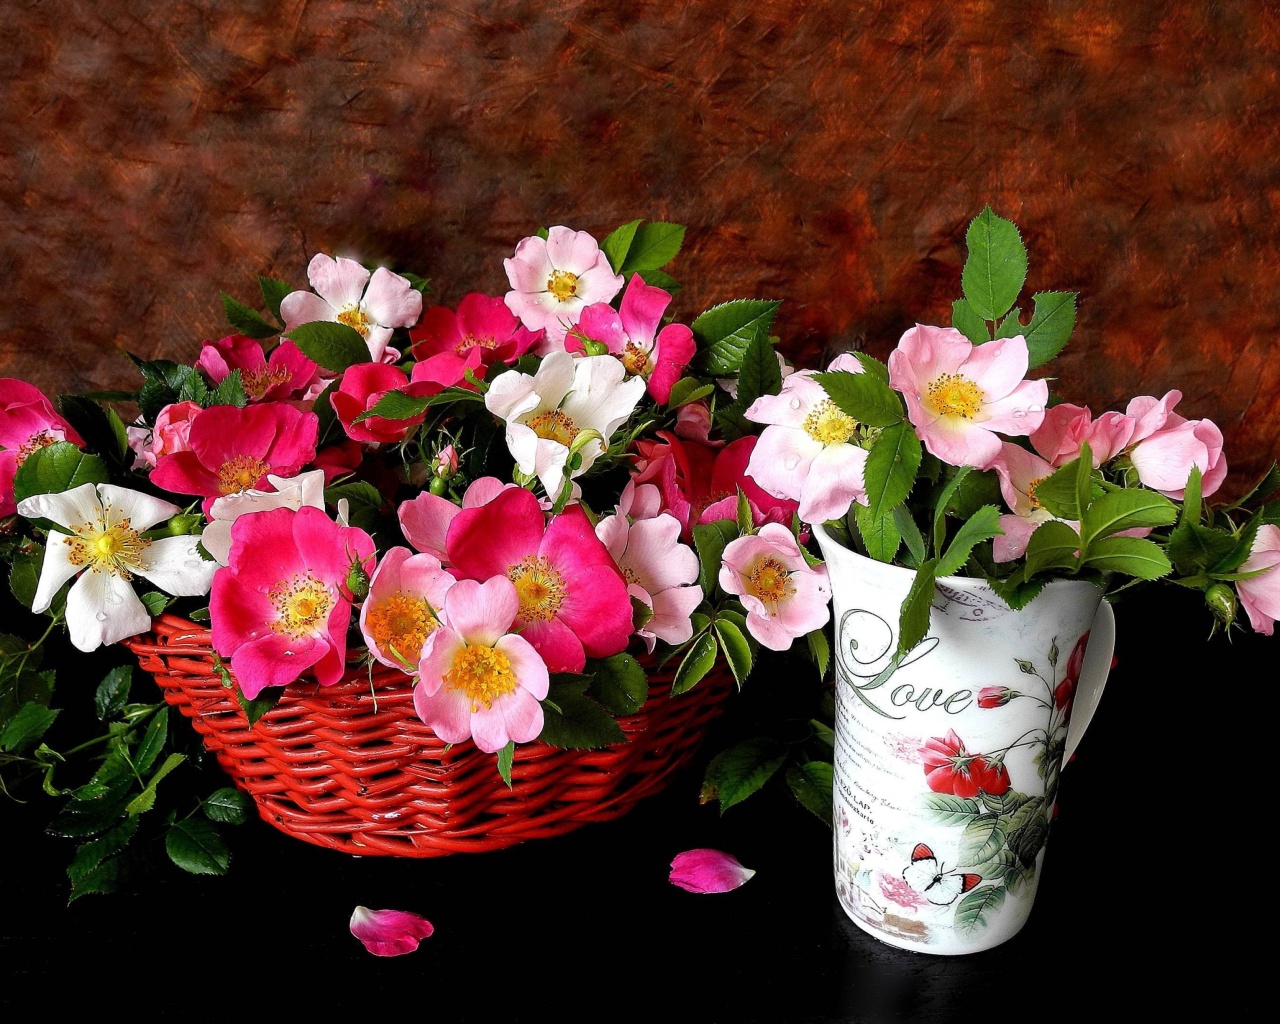 Sweetheart flowers wallpaper 1280x1024